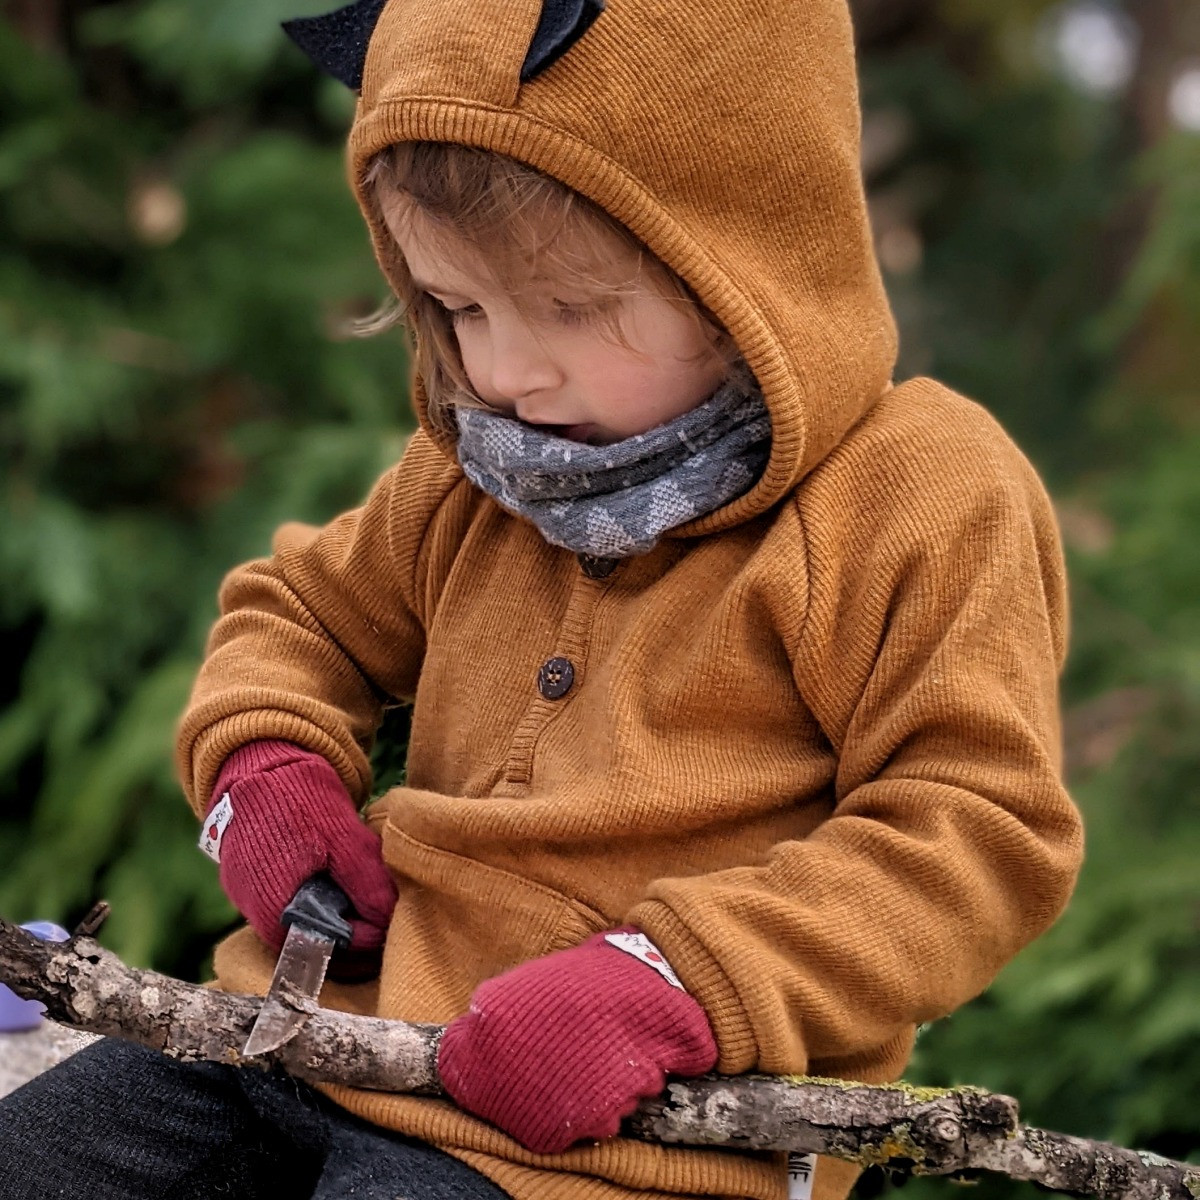 modele tricot moufles bébé marine avec cordon de couleur